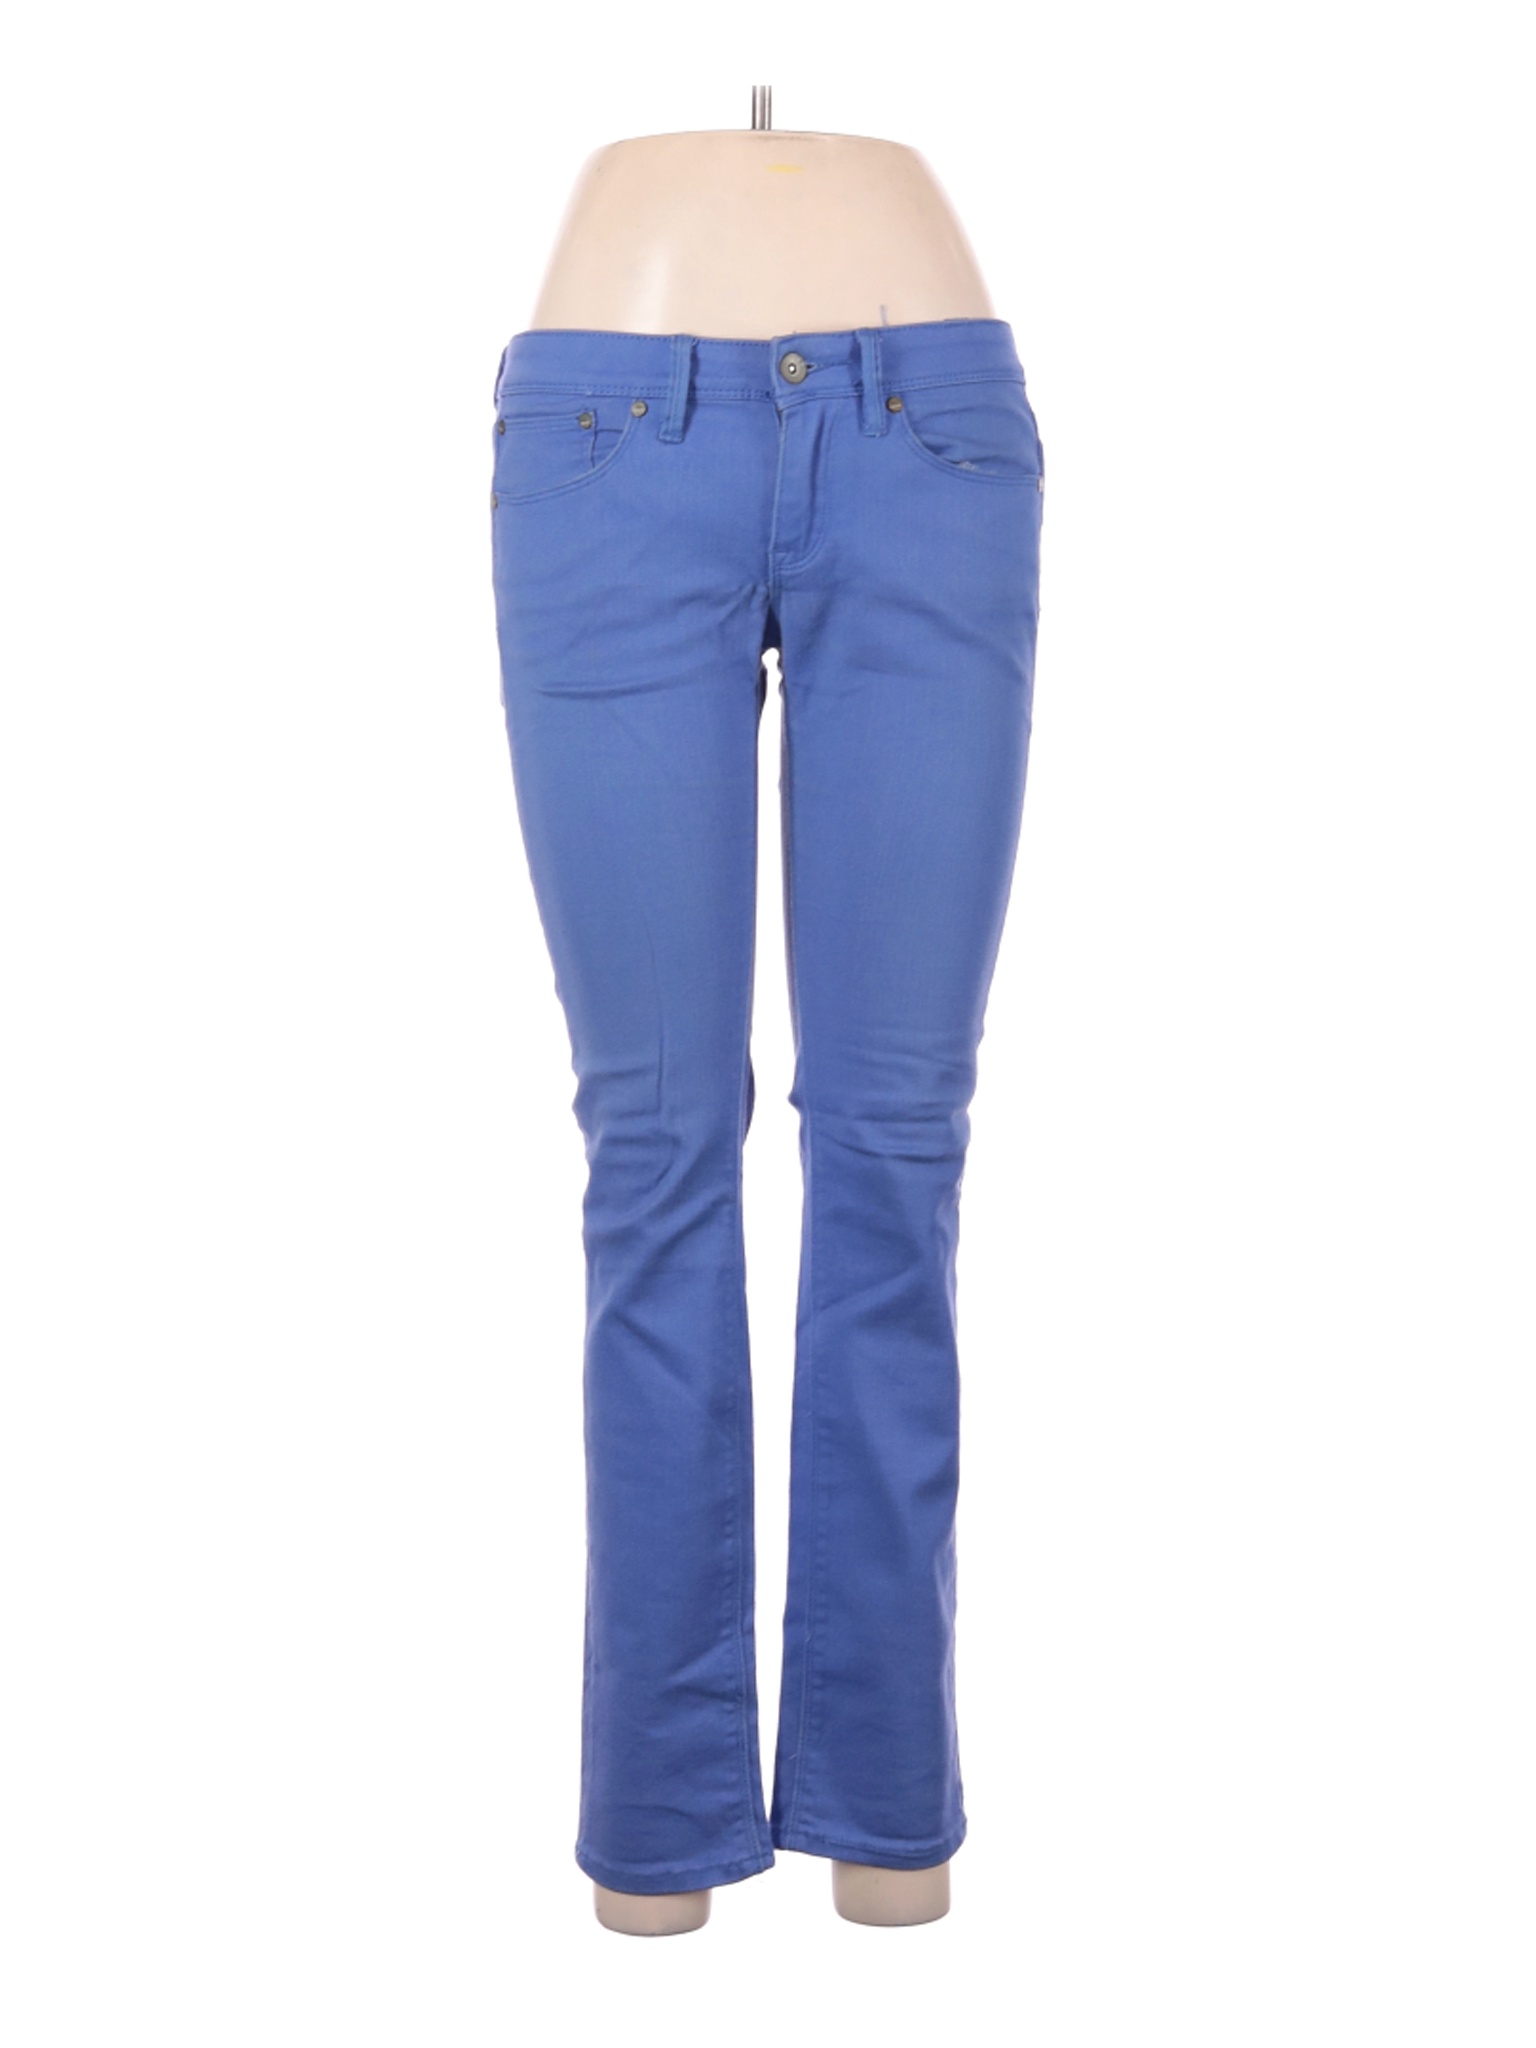 Roxy Women Blue Jeans 28W | eBay